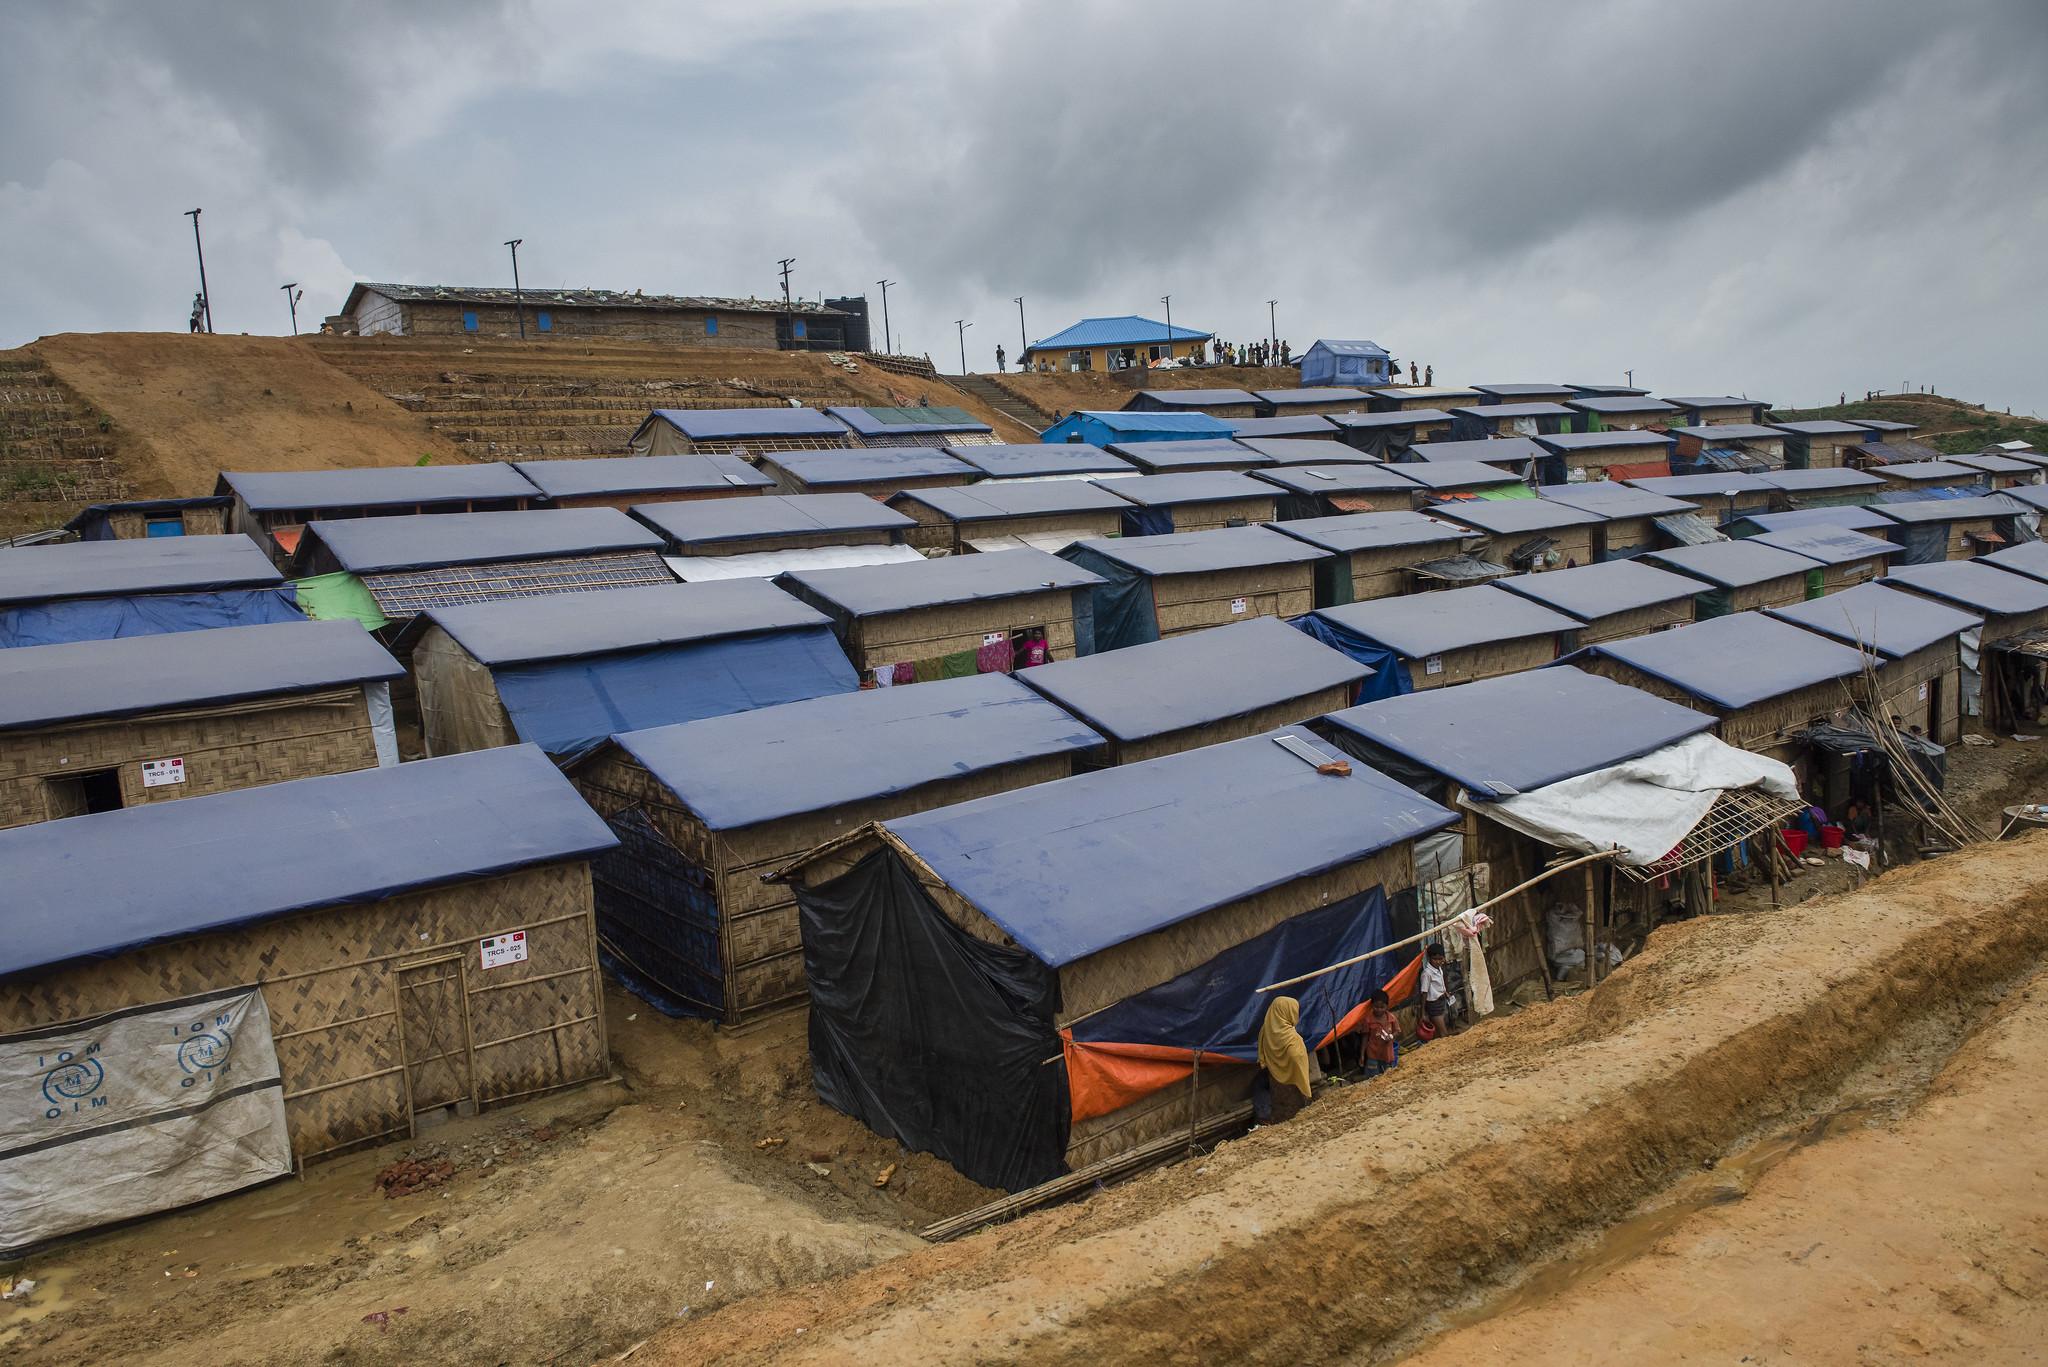 Kutupalong, the world’s largest refugee camp